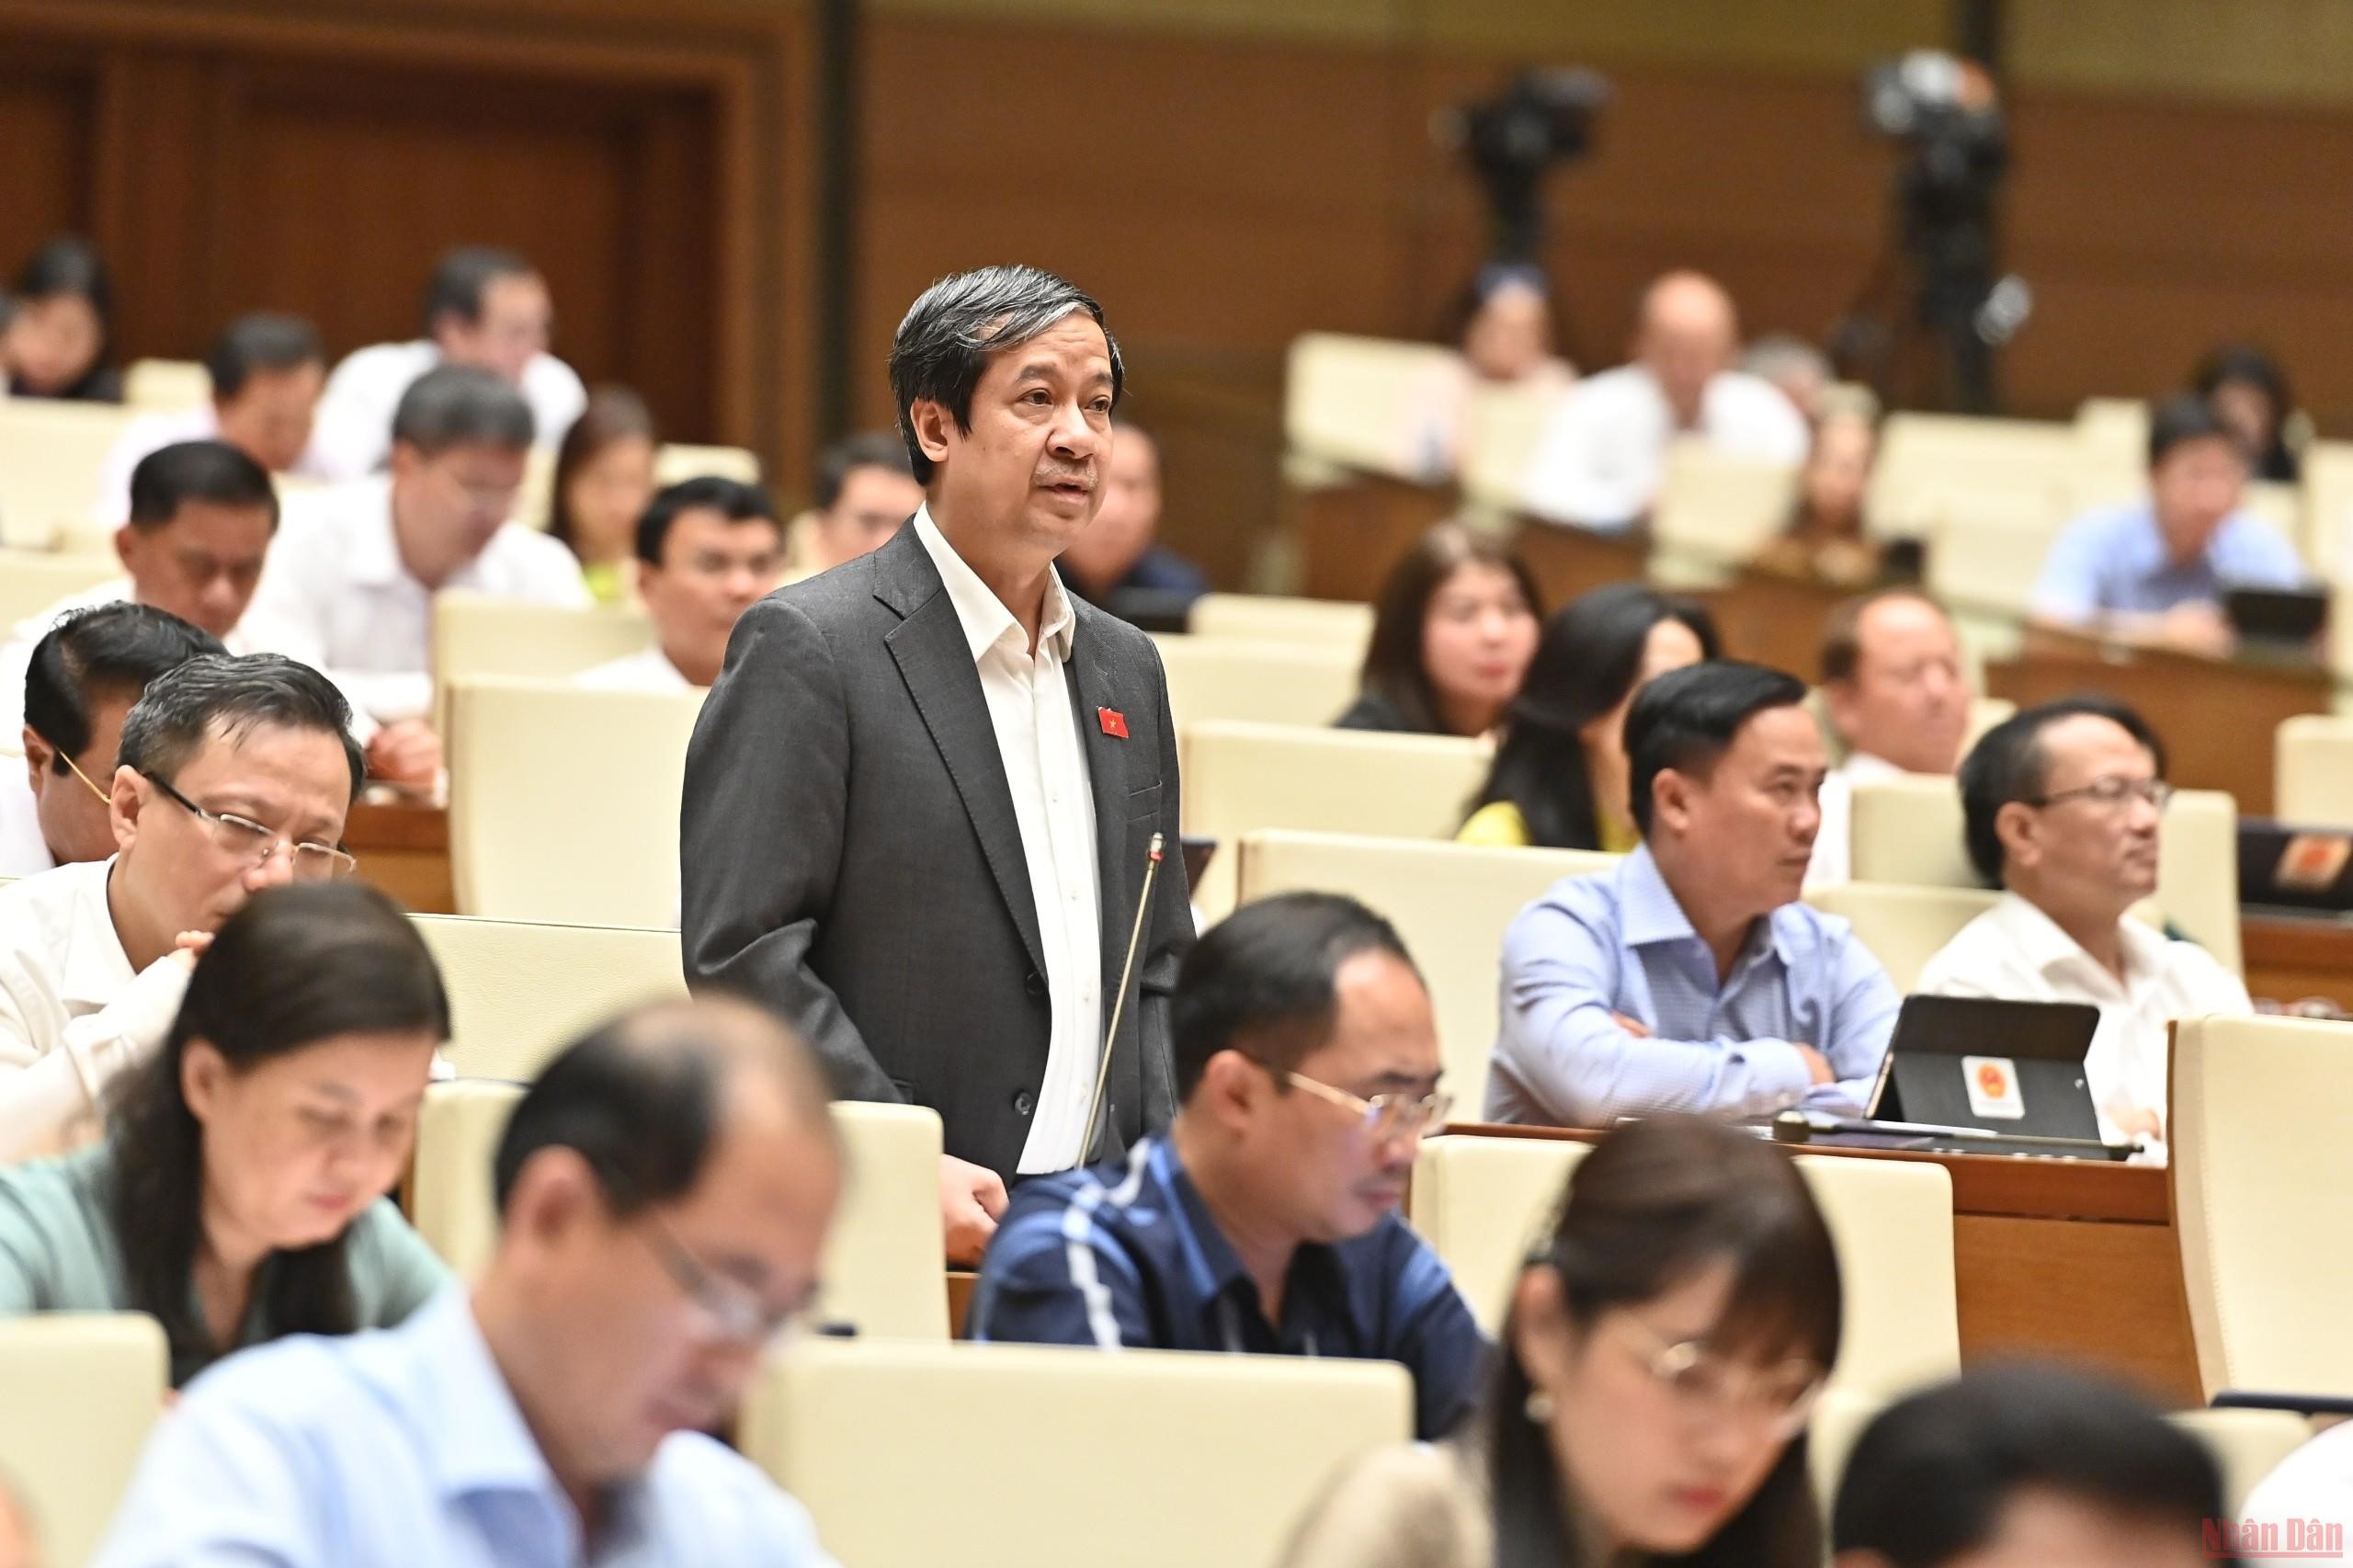 Bộ trưởng Giáo dục và Đào tạo Nguyễn Kim Sơn phát biểu tại phiên chất vấn của Quốc hội sáng 8/6. (Ảnh: LINH KHOA)